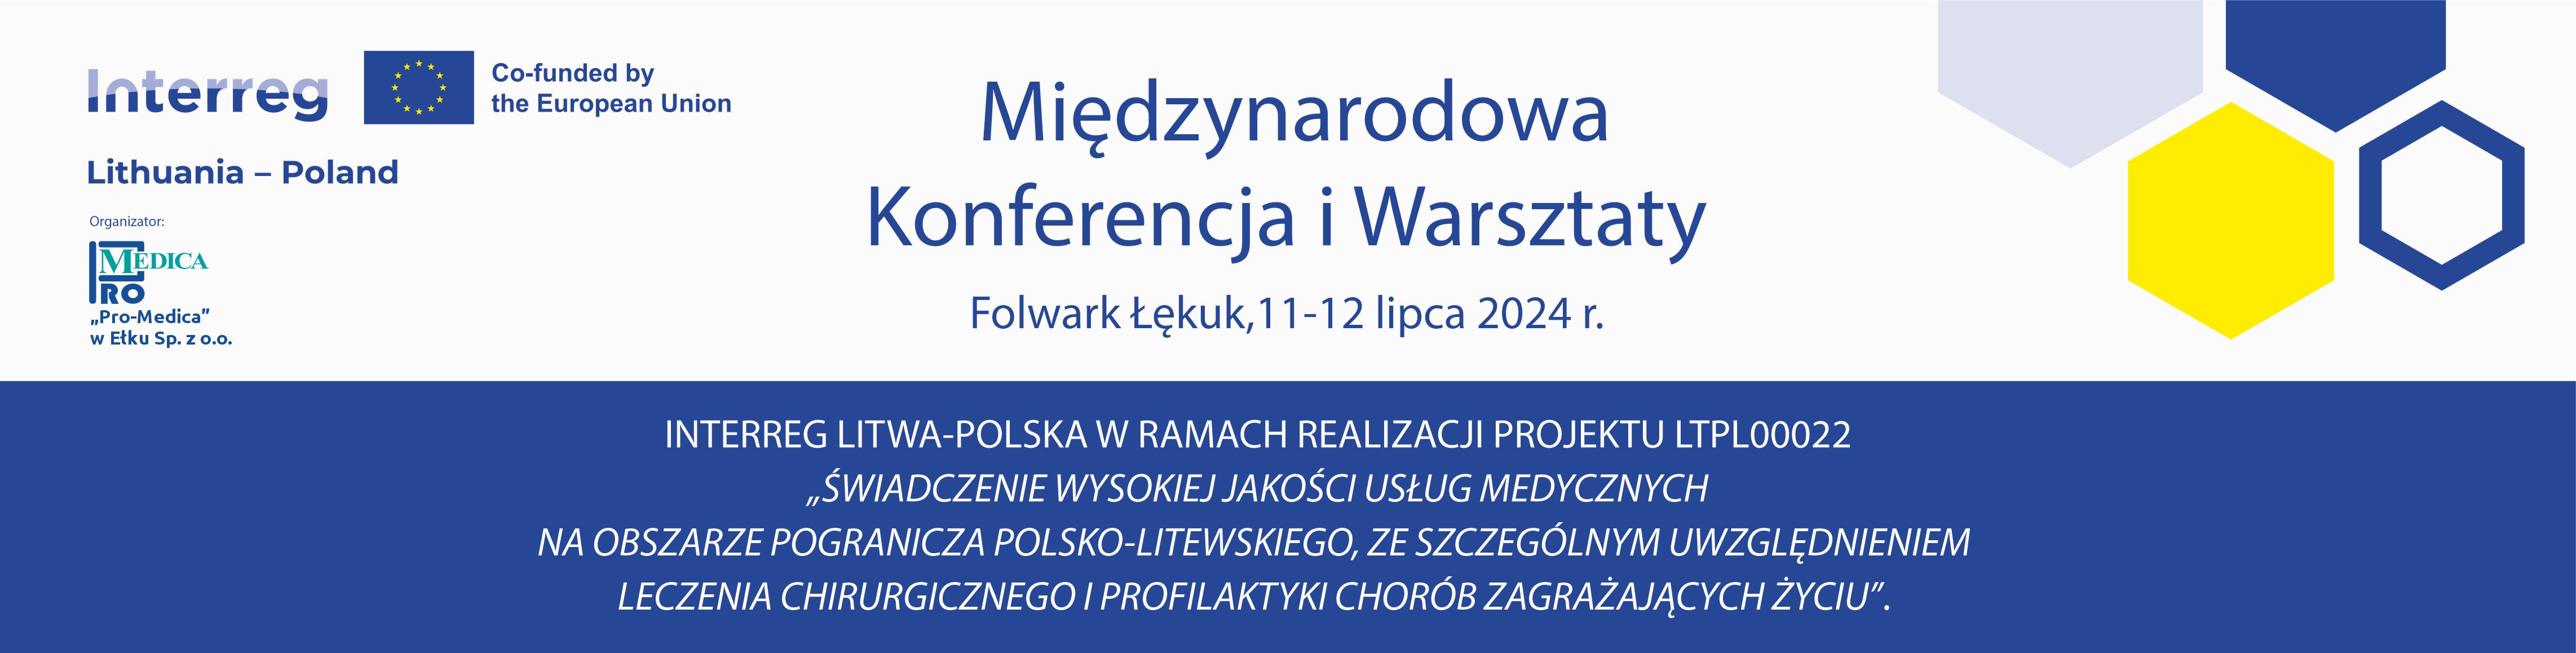 Konferencja Międzynarodowa i Warsztaty Interreg Litwa-Polska